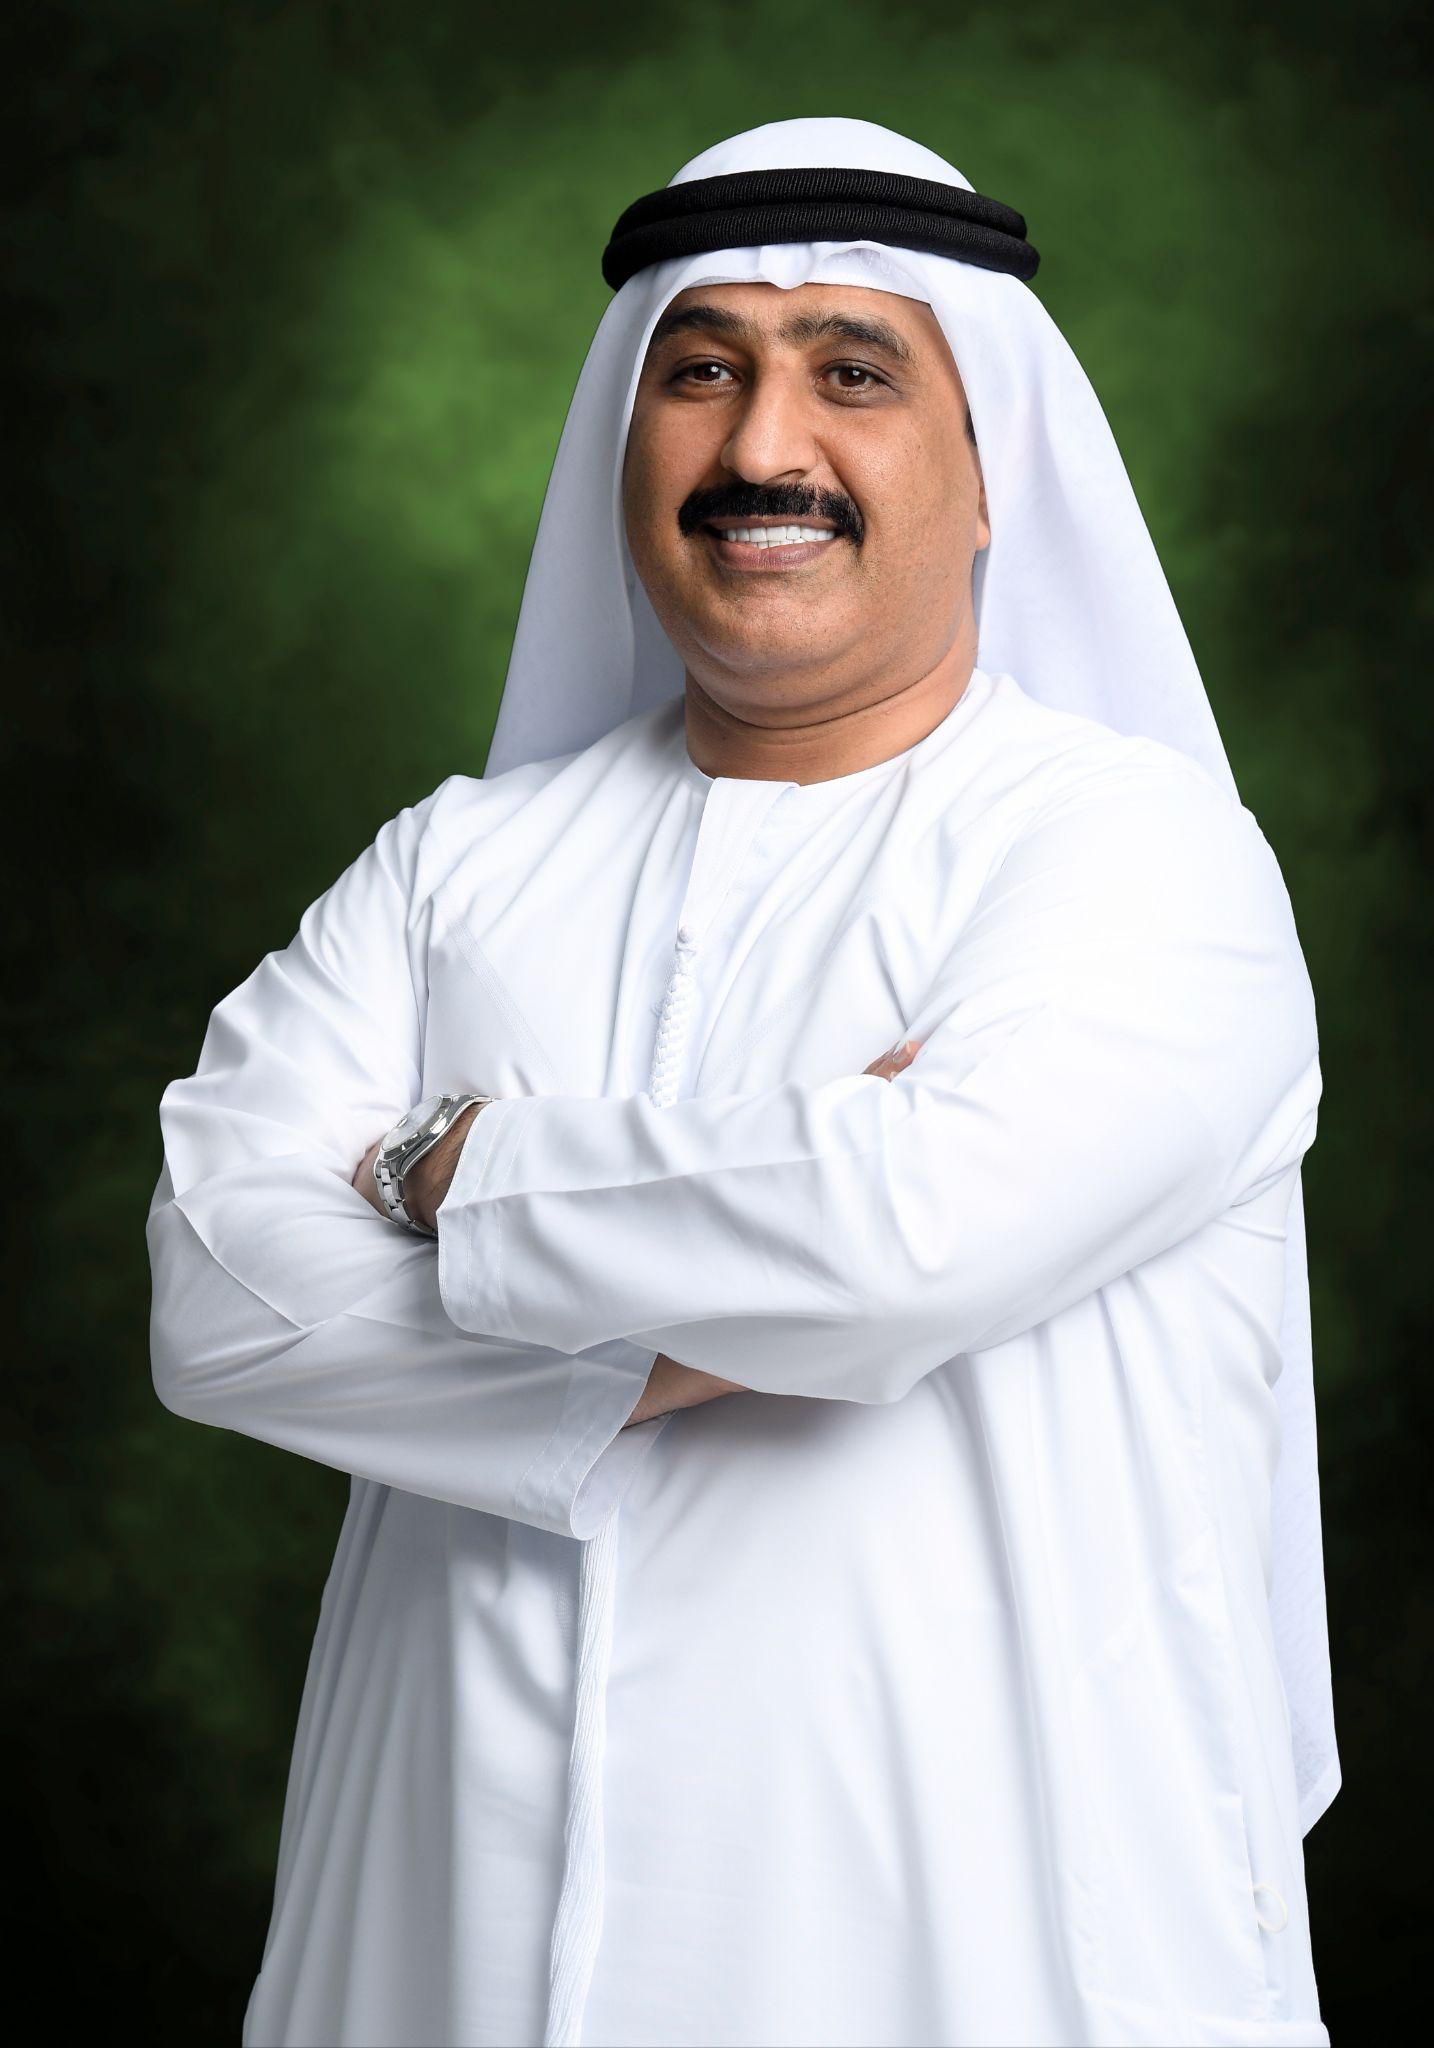 Mr Nabeel Ahmed Mohammed Mahmood, CEO of Al Nahda Center